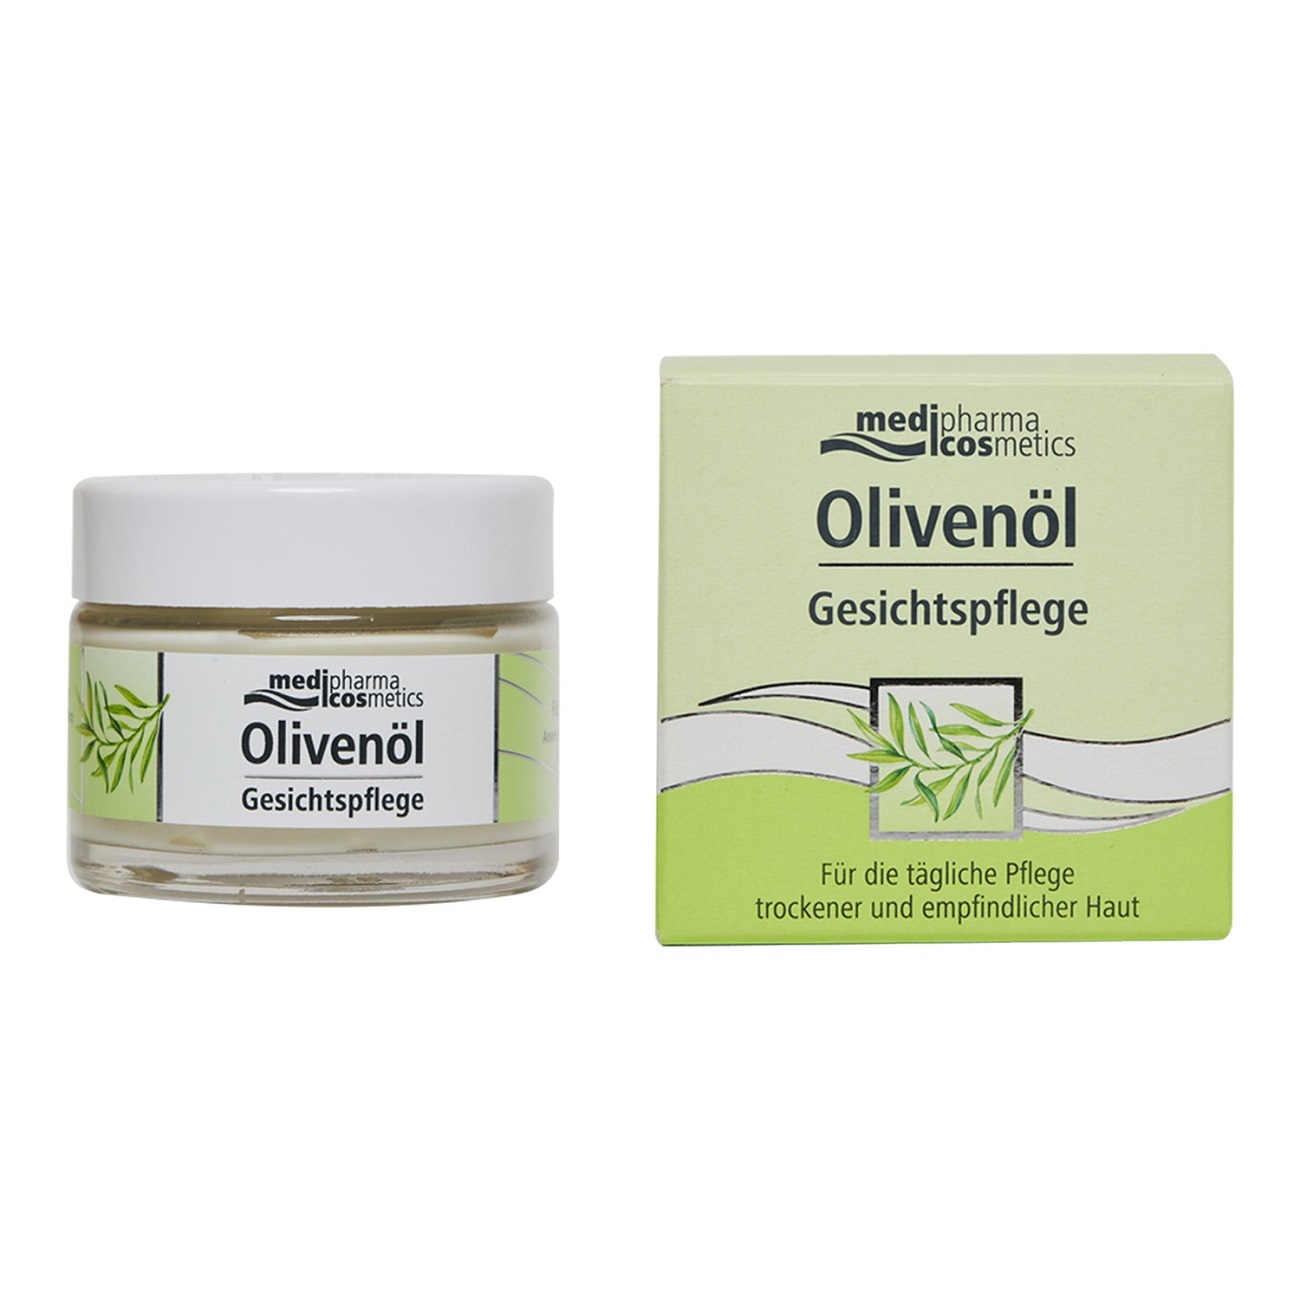 Купить Medipharma Cosmetics Крем для лица легкий 50 мл (Medipharma Cosmetics, Olivenol), Германия